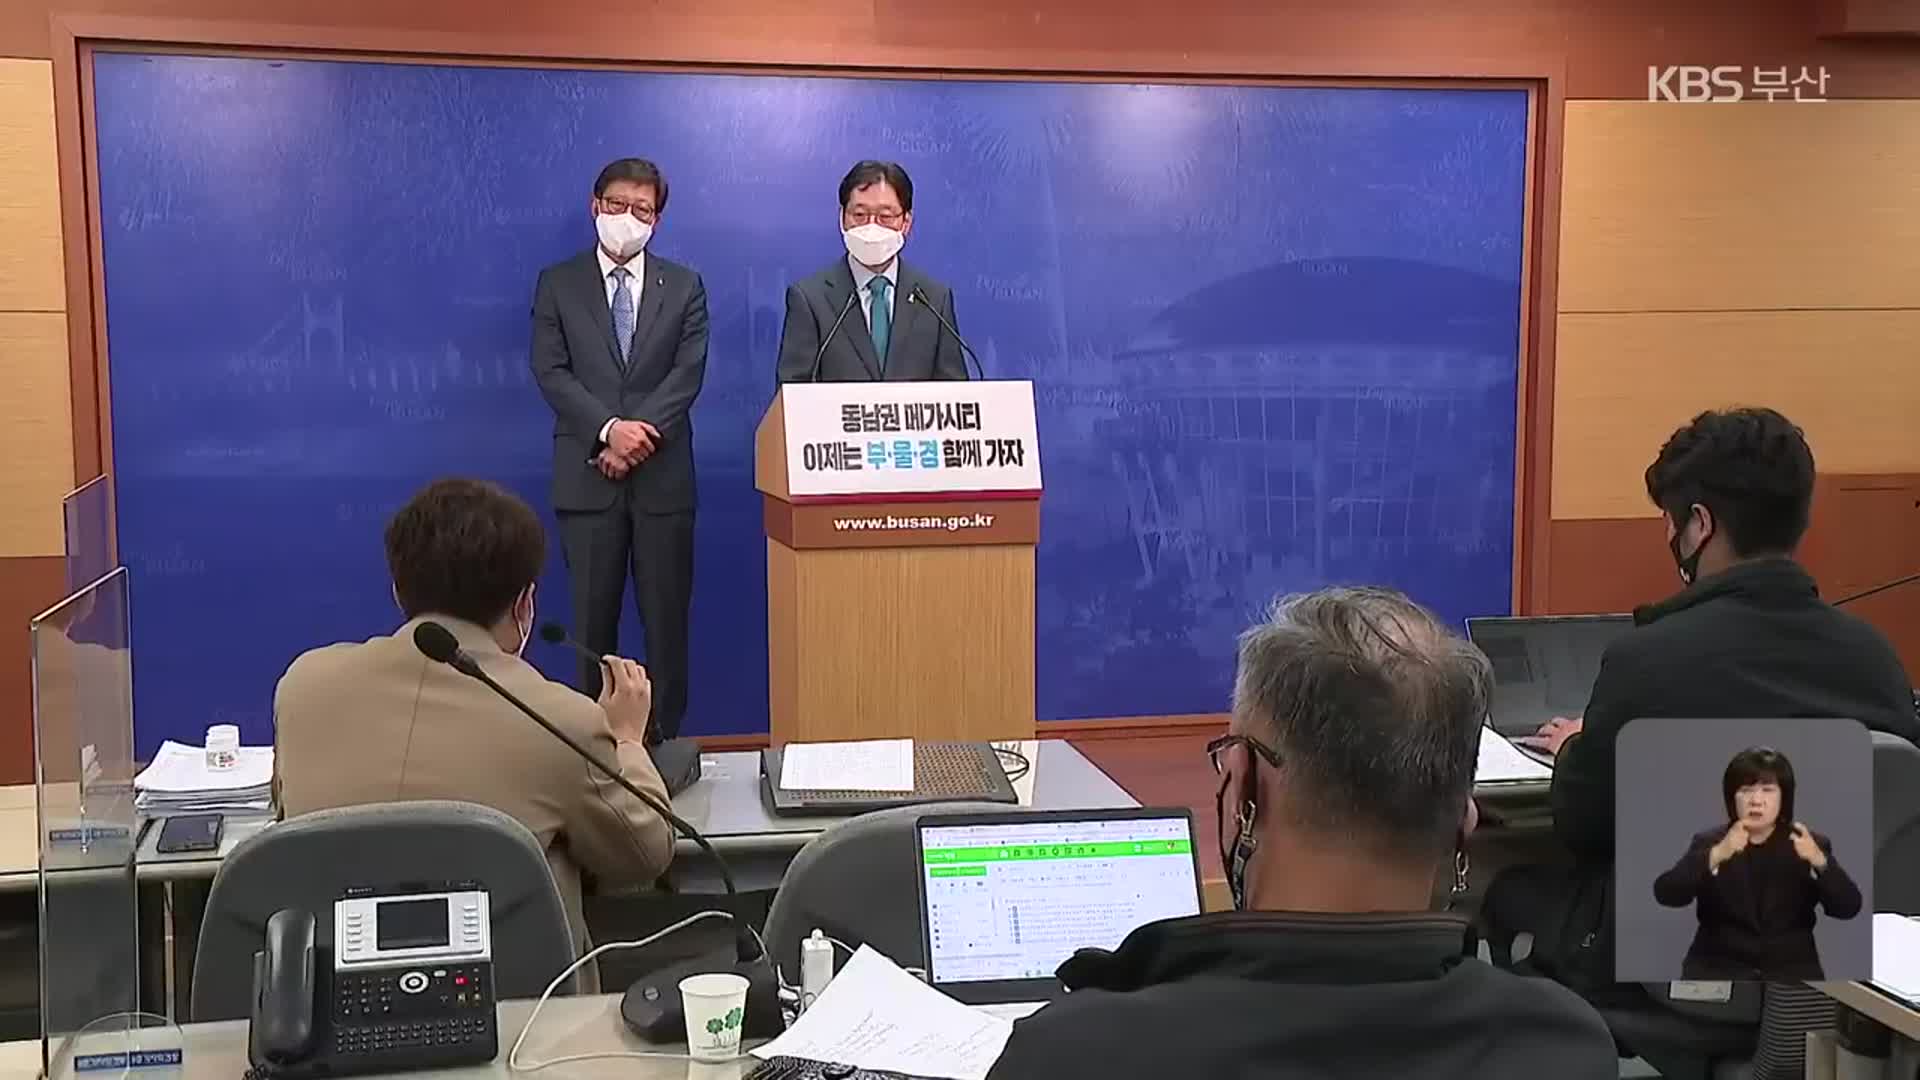 박형준-김경수 “메가시티 위해 초당적 협치”